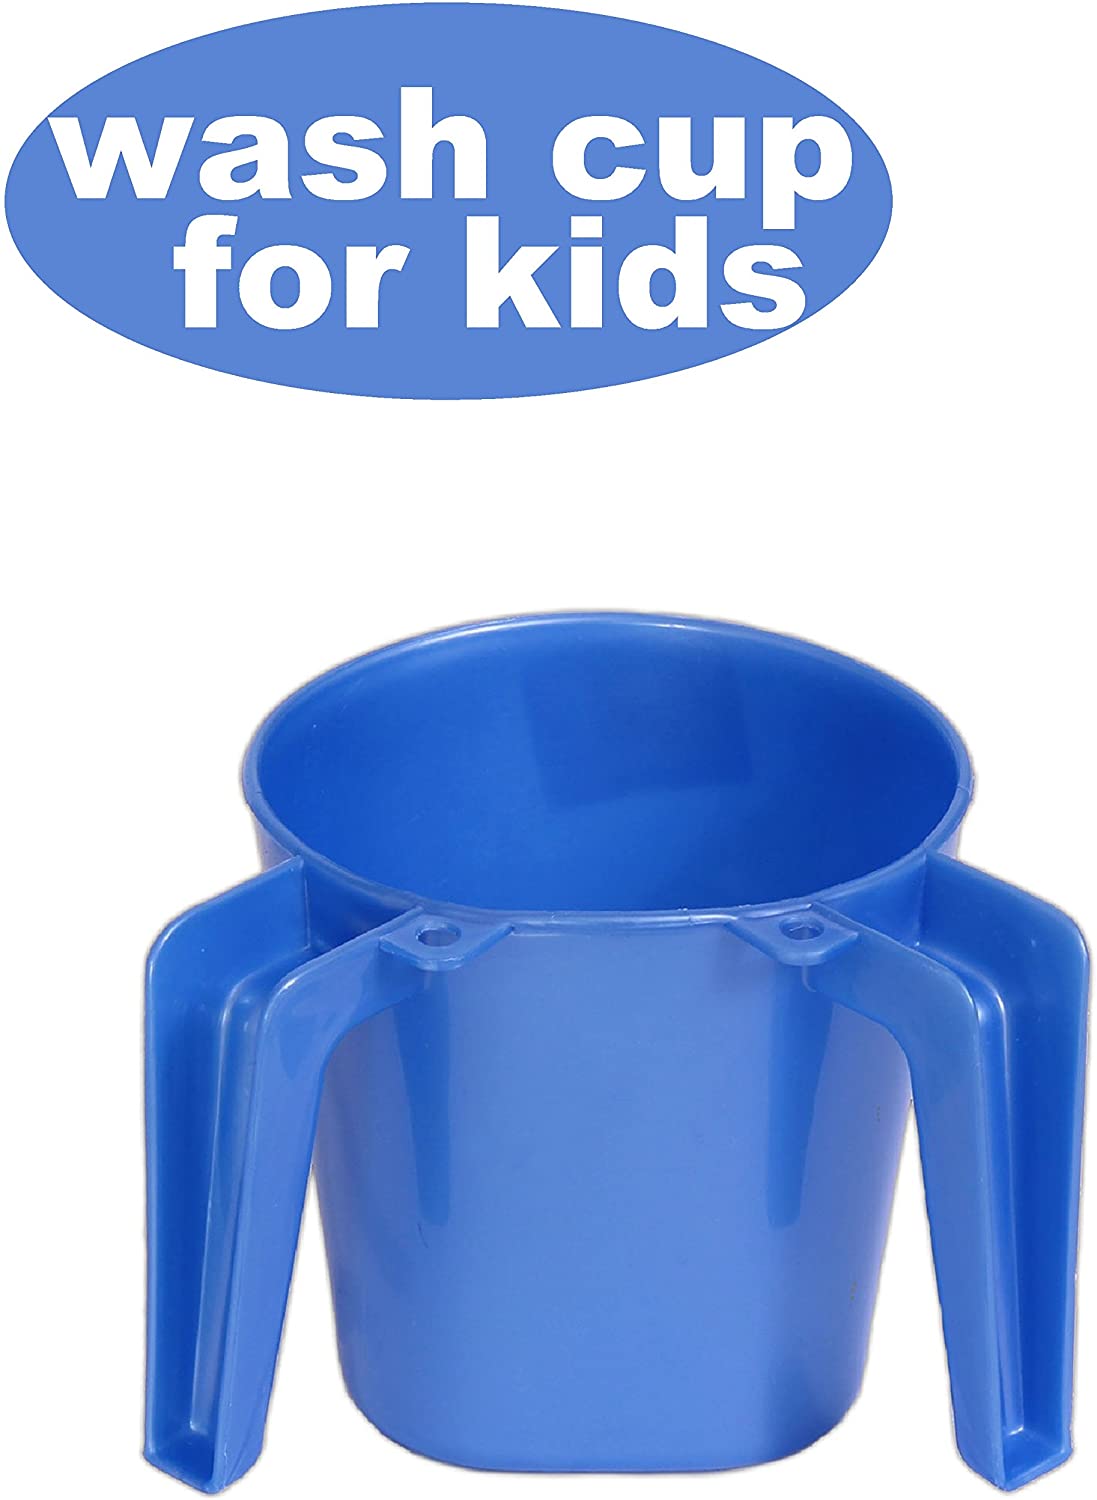 YBM Home Plastic Square Small Washing Cup, Blue